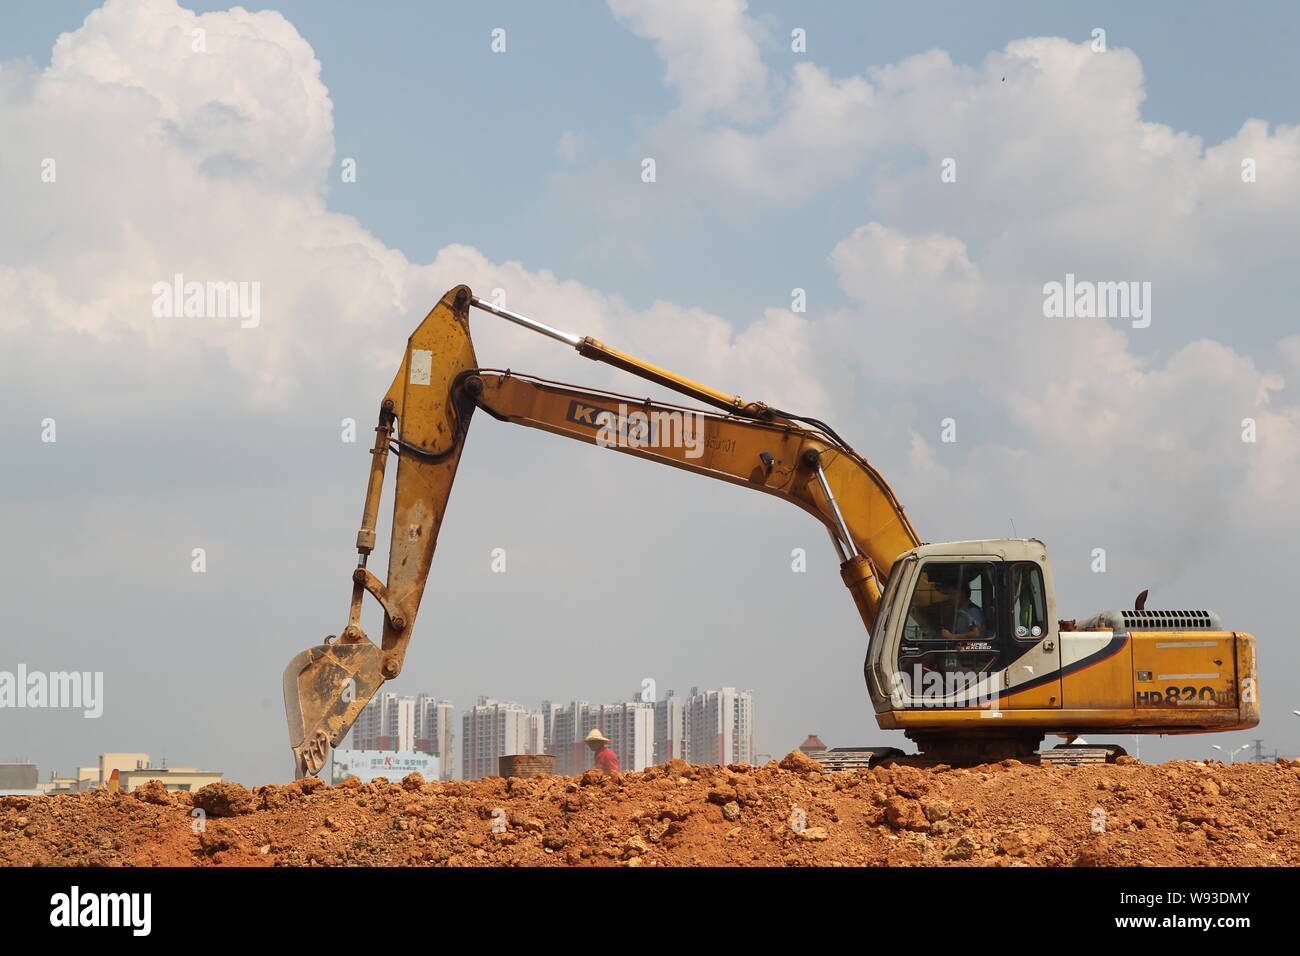 ---- Ein Bagger gräbt Boden an der Baustelle für das Welthöchste Gebäude Sky City in Changsha City, Central China Hunan Provinz, 19 Ju Stockfoto